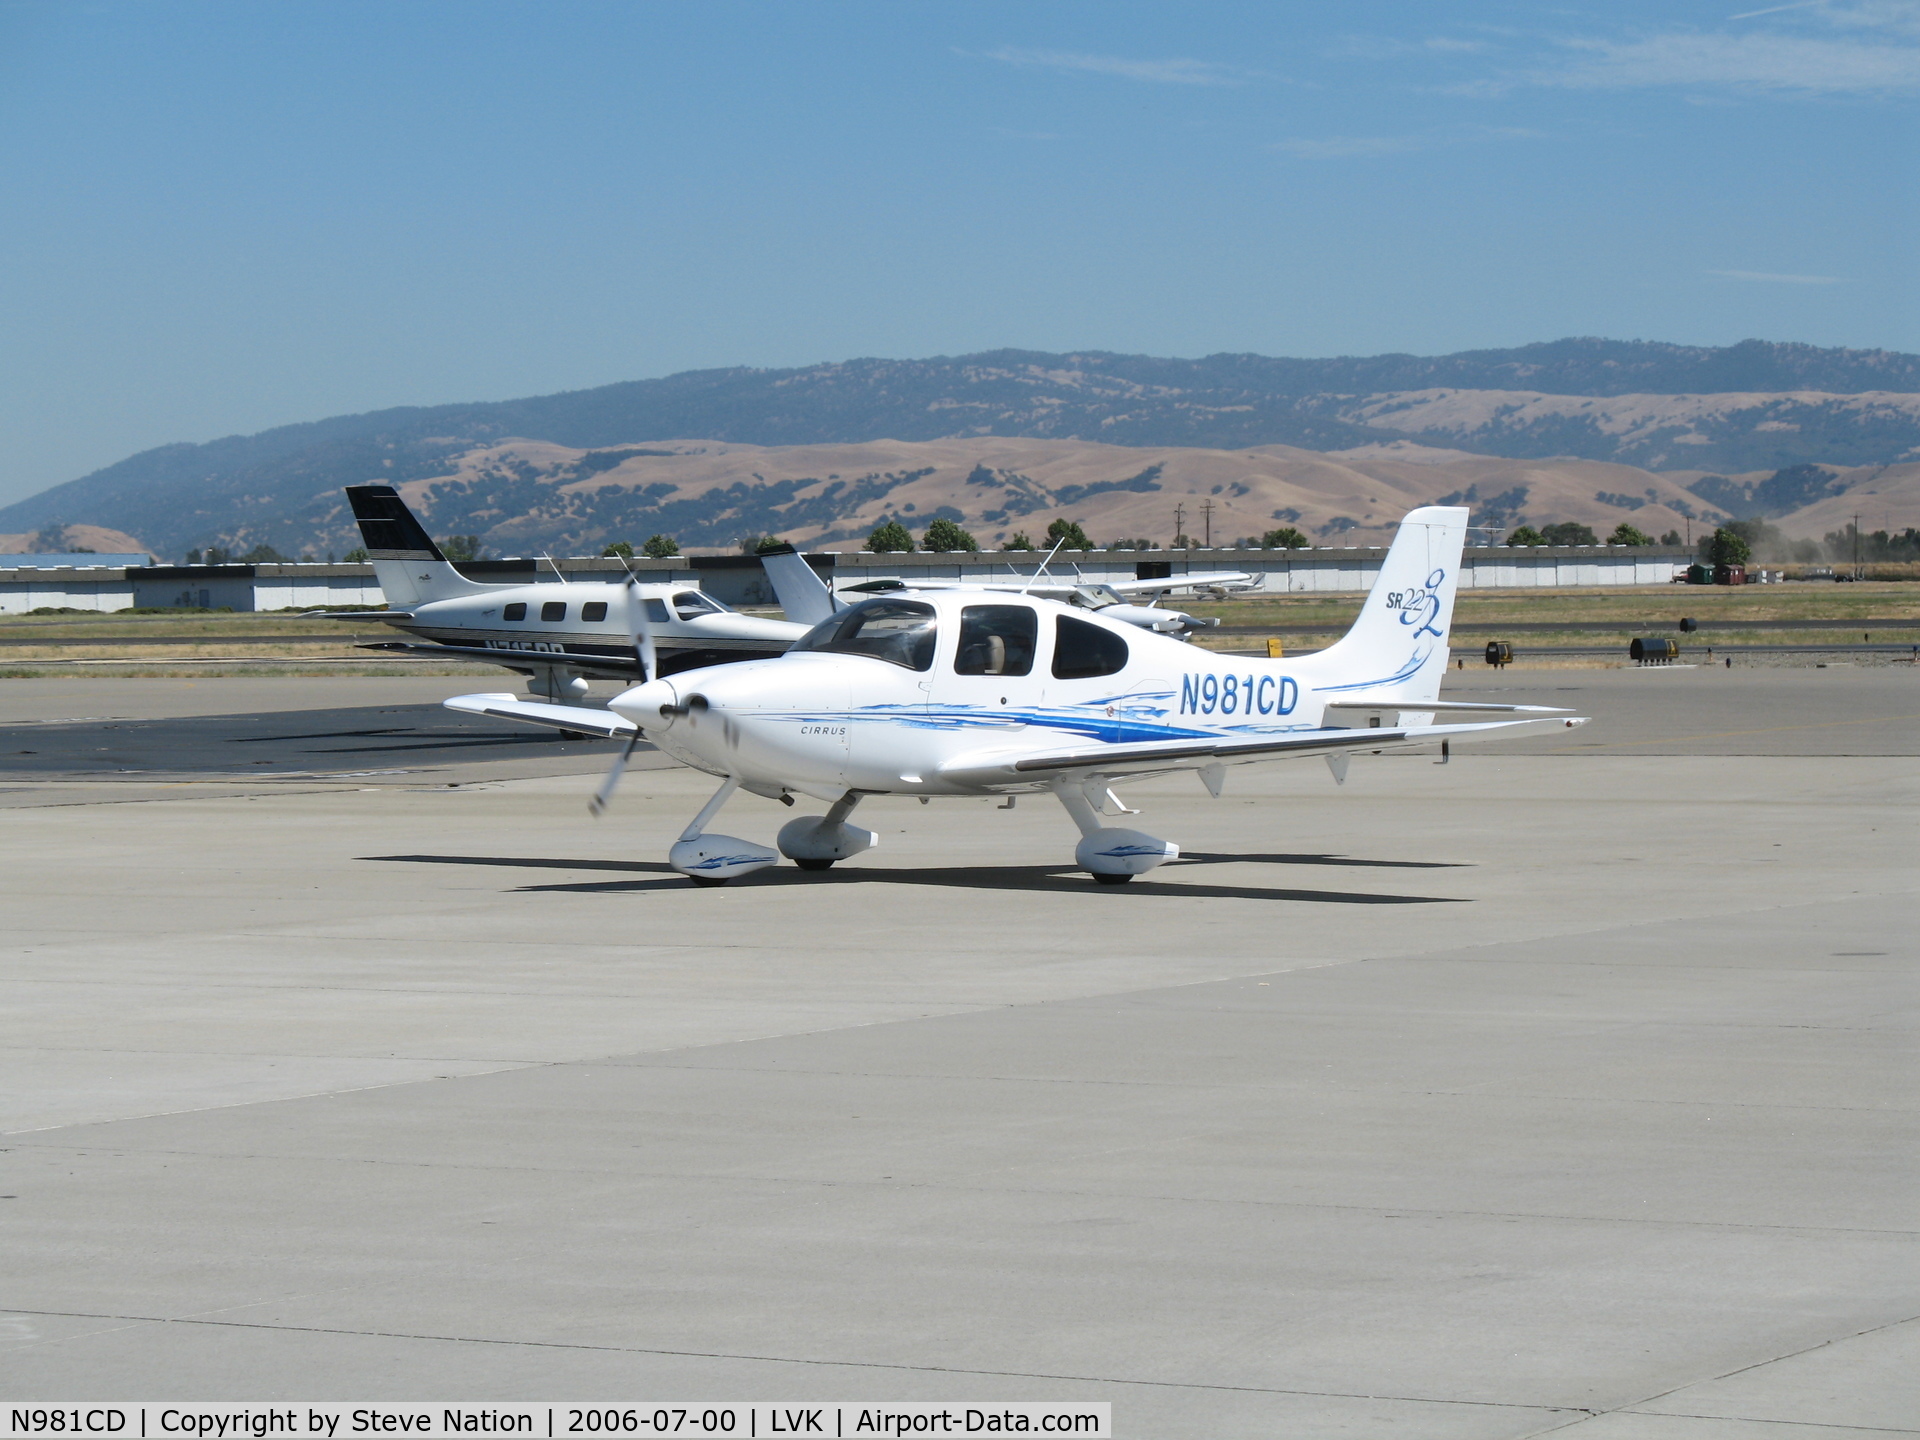 N981CD, 2006 Cirrus SR22 C/N 1896, Airpower Aviation LLC 2006 Cirrus Design SR22 taxying @ Livermore Municipal Airport, CA